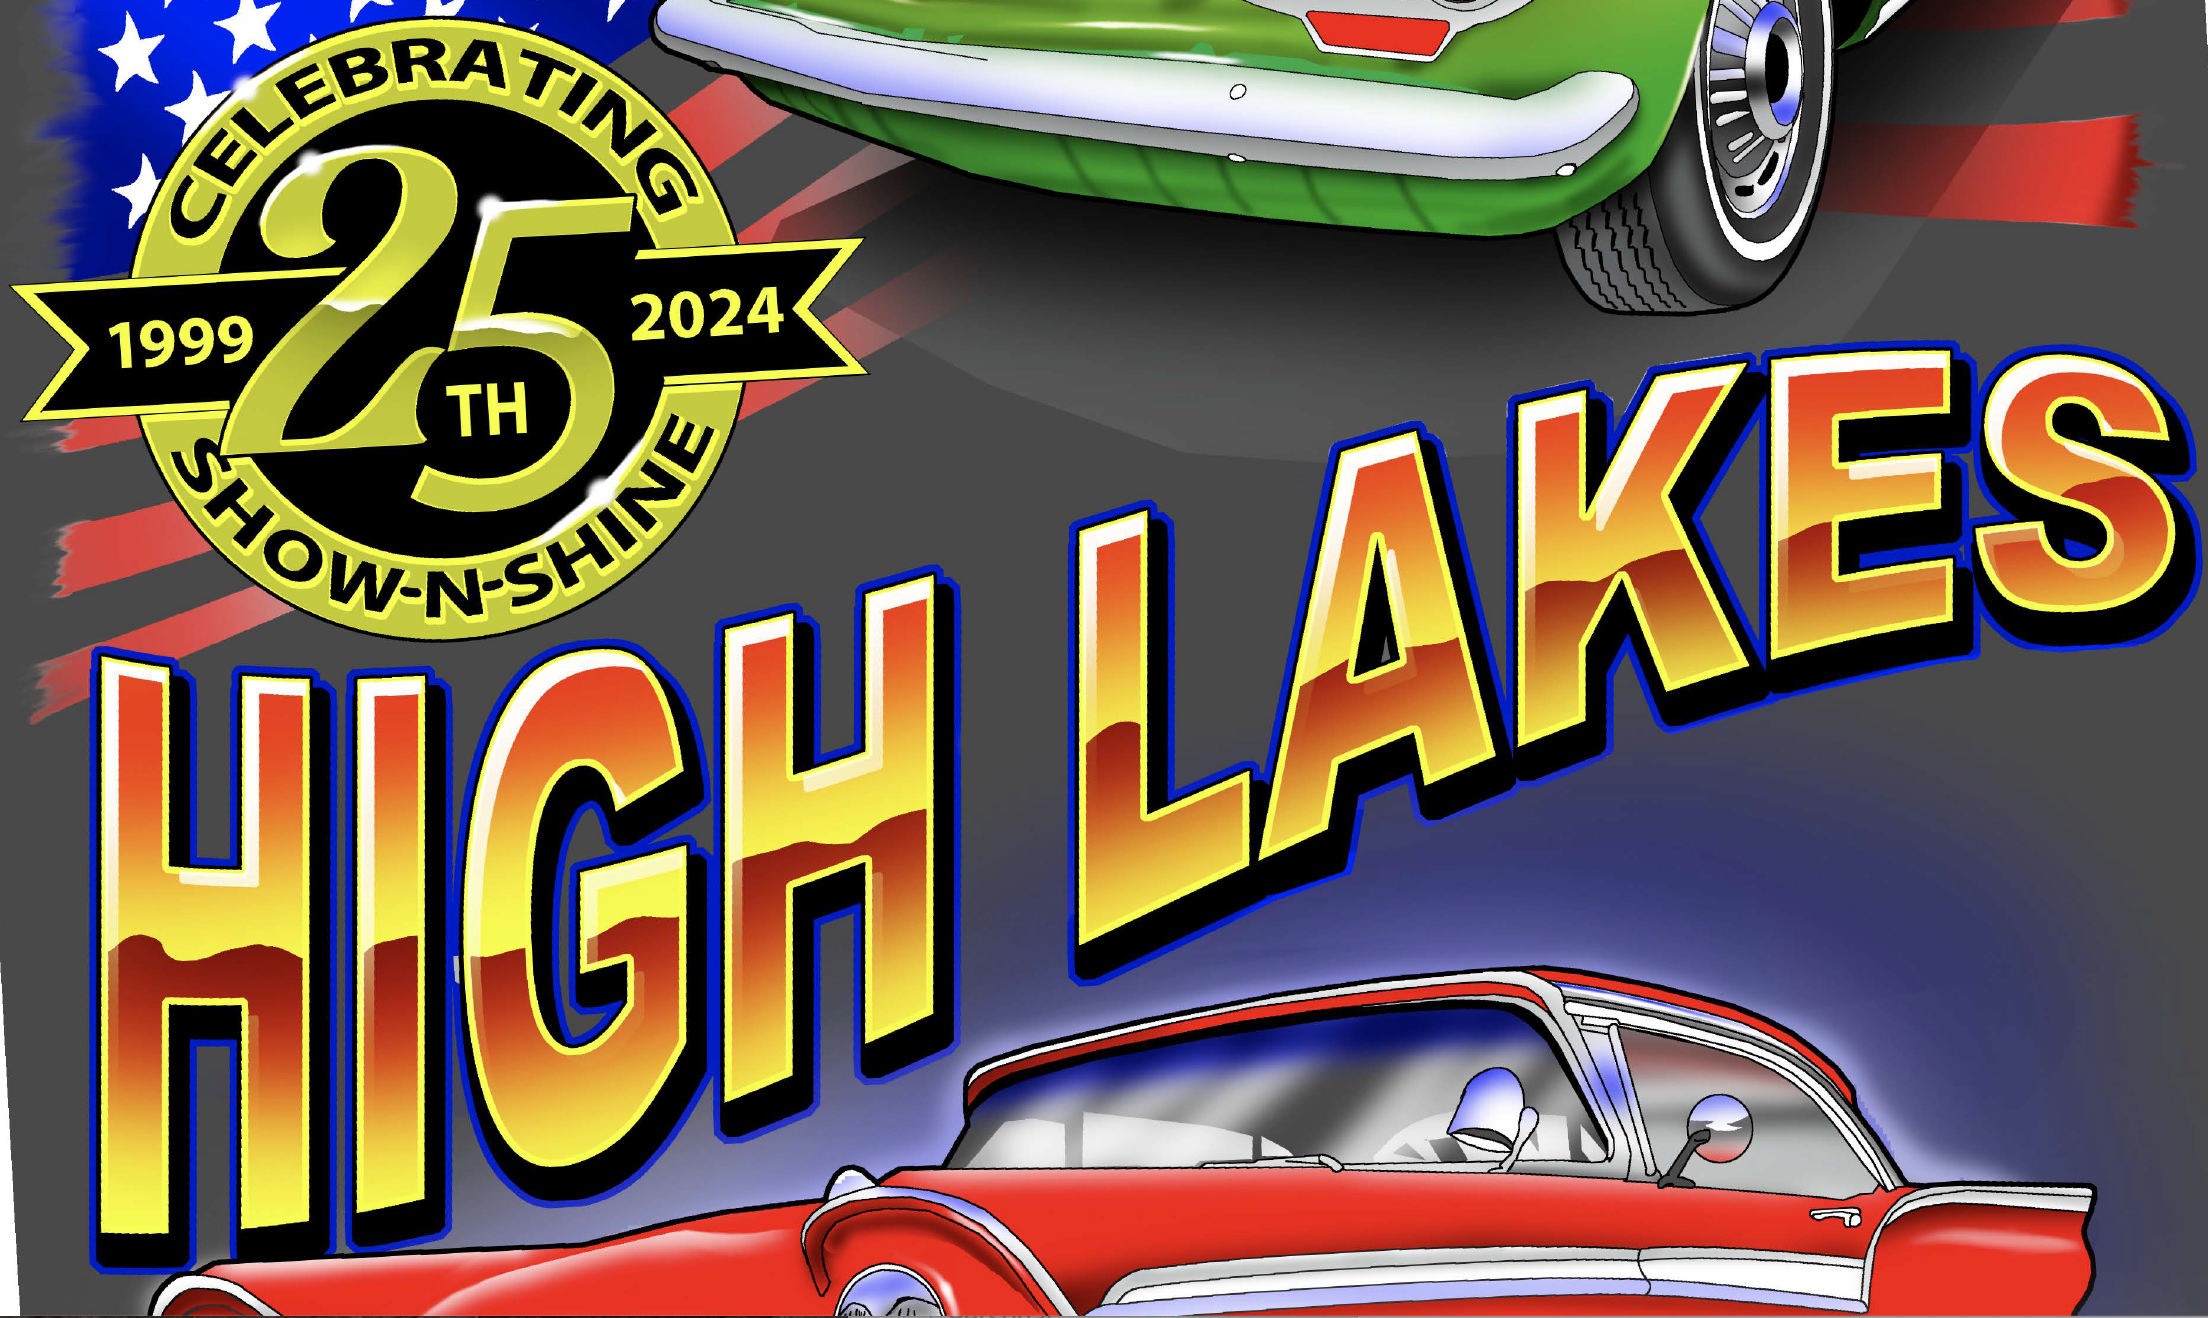 High Lakes Car Club